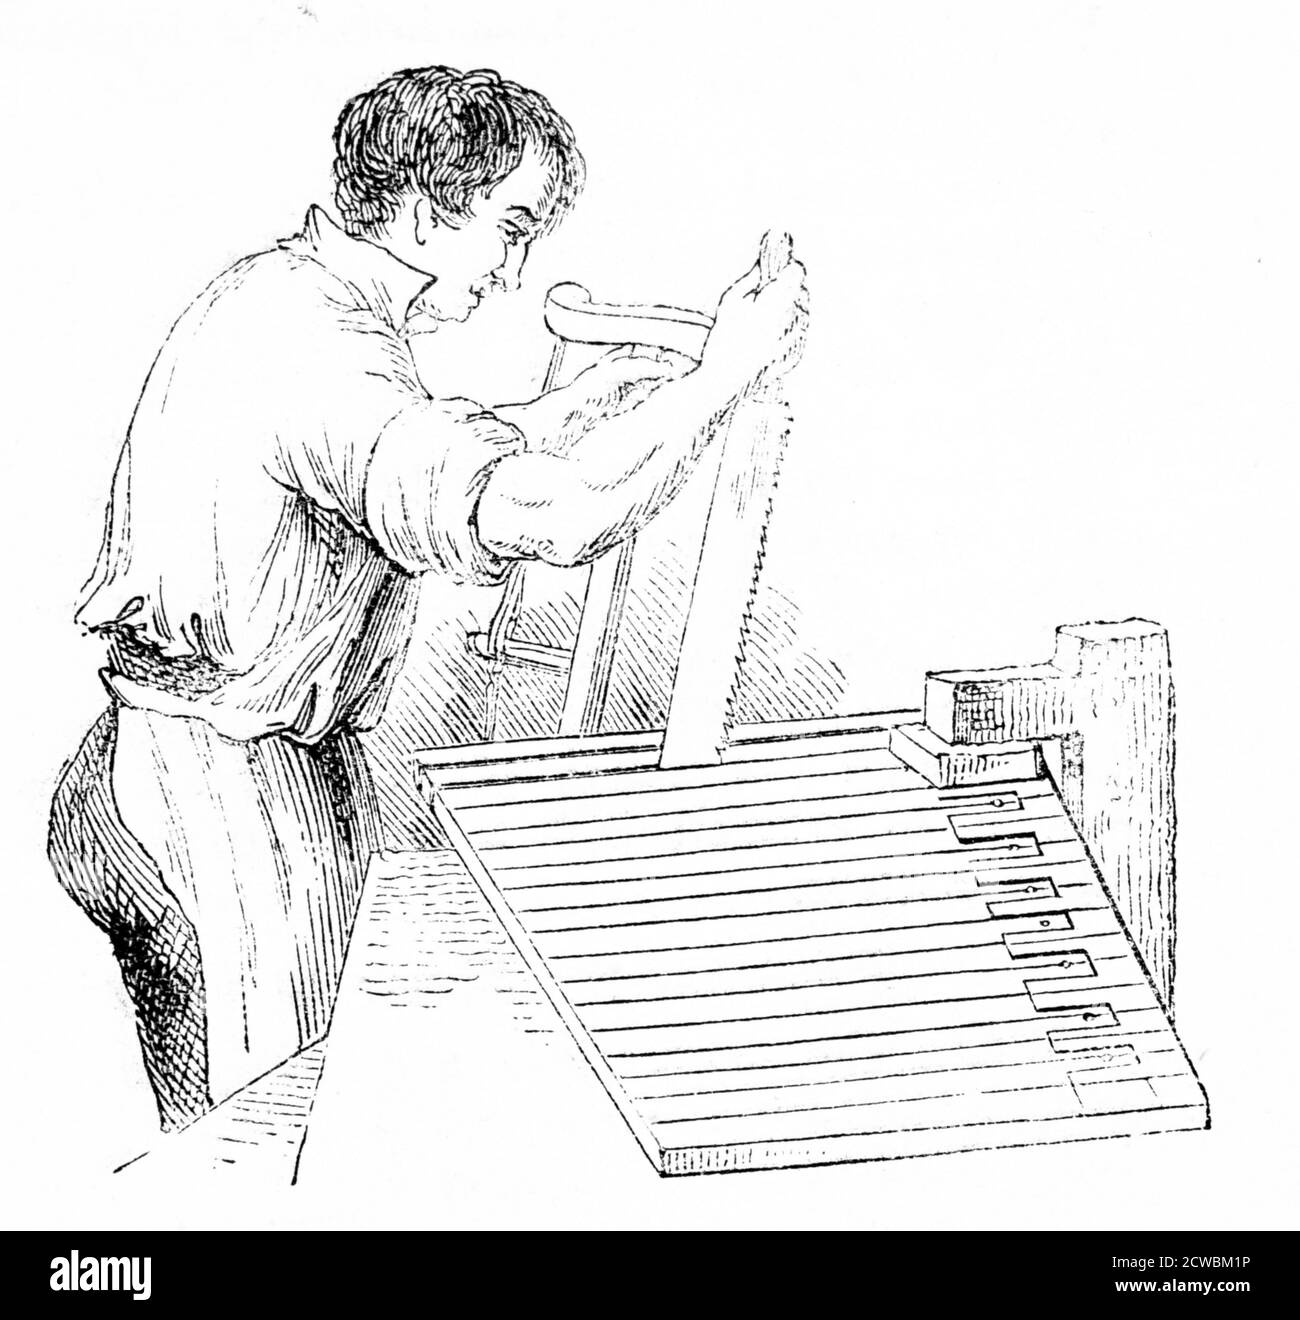 Gravur, die den Prozess des Schneidens von Klavierschlüsseln darstellt: Broadwood's Factory, Horseferry Road, London. Stockfoto